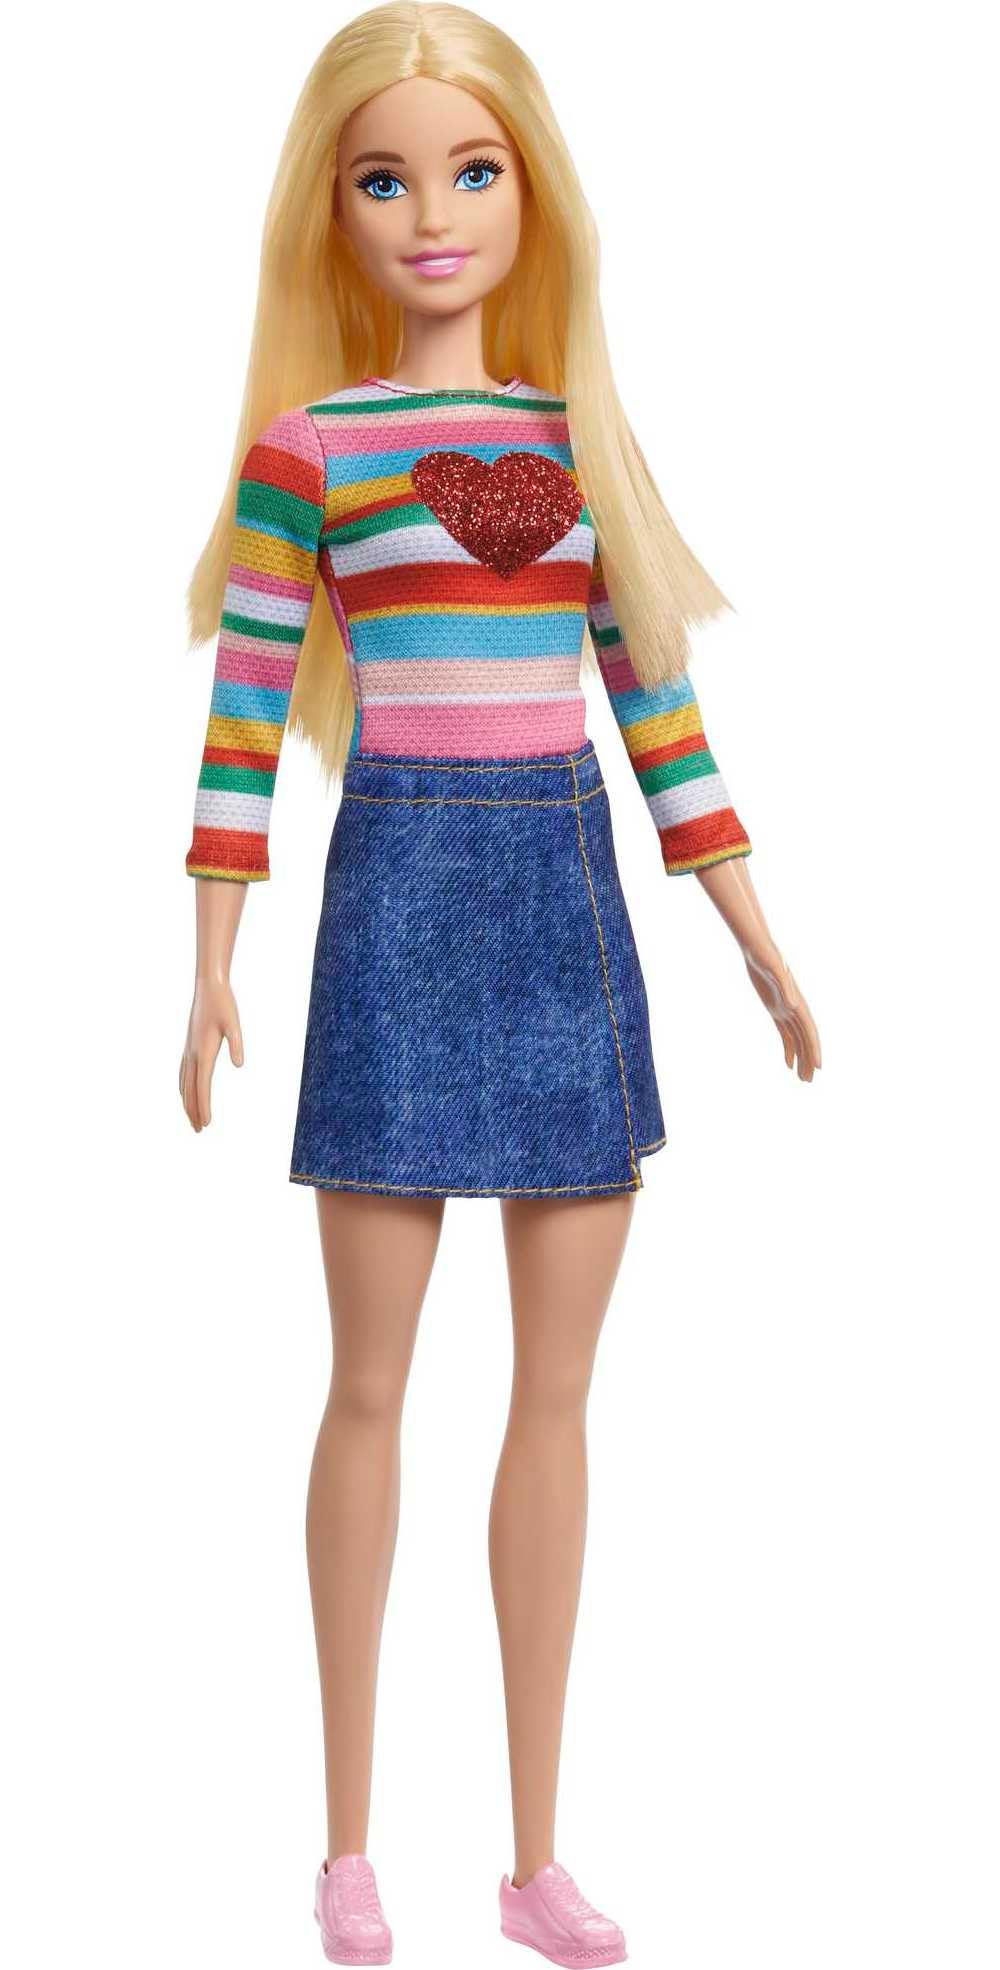 Magnifique Barbie Poupée Barbie « Malibu » Roberts avec Cheveux Blonds, T-Shirt Arc-en-ciel, Jupe en Jean et Chaussures, Jouet Enfant, De 3 à 7 ans, HGT13 BvSjmSP29 pas cher